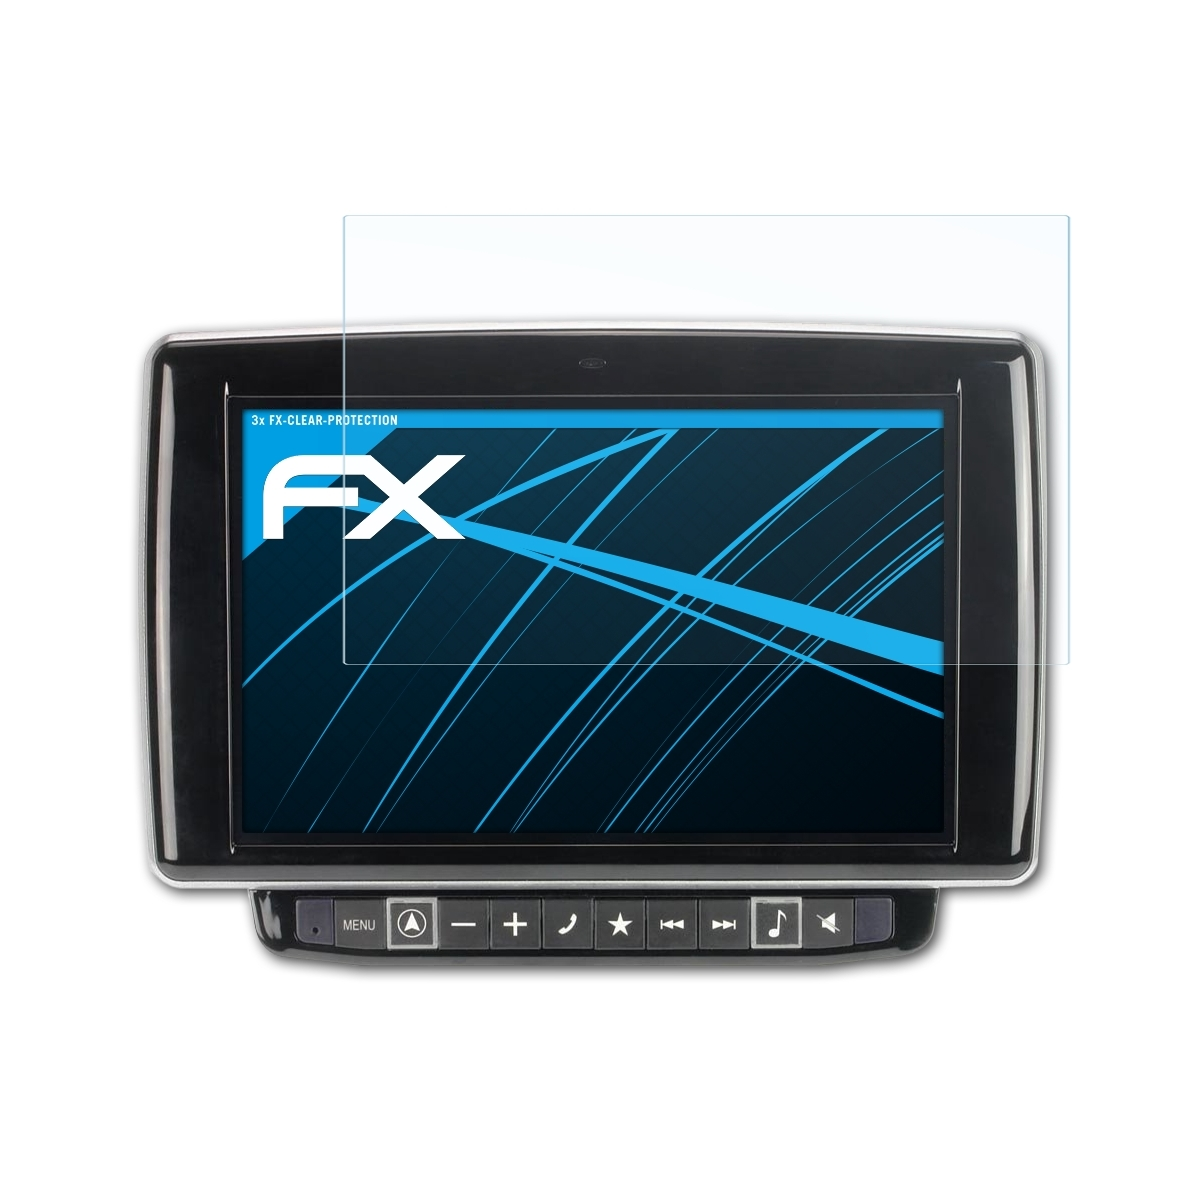 ATFOLIX 3x FX-Clear Displayschutz(für Alpine X901D-DU)